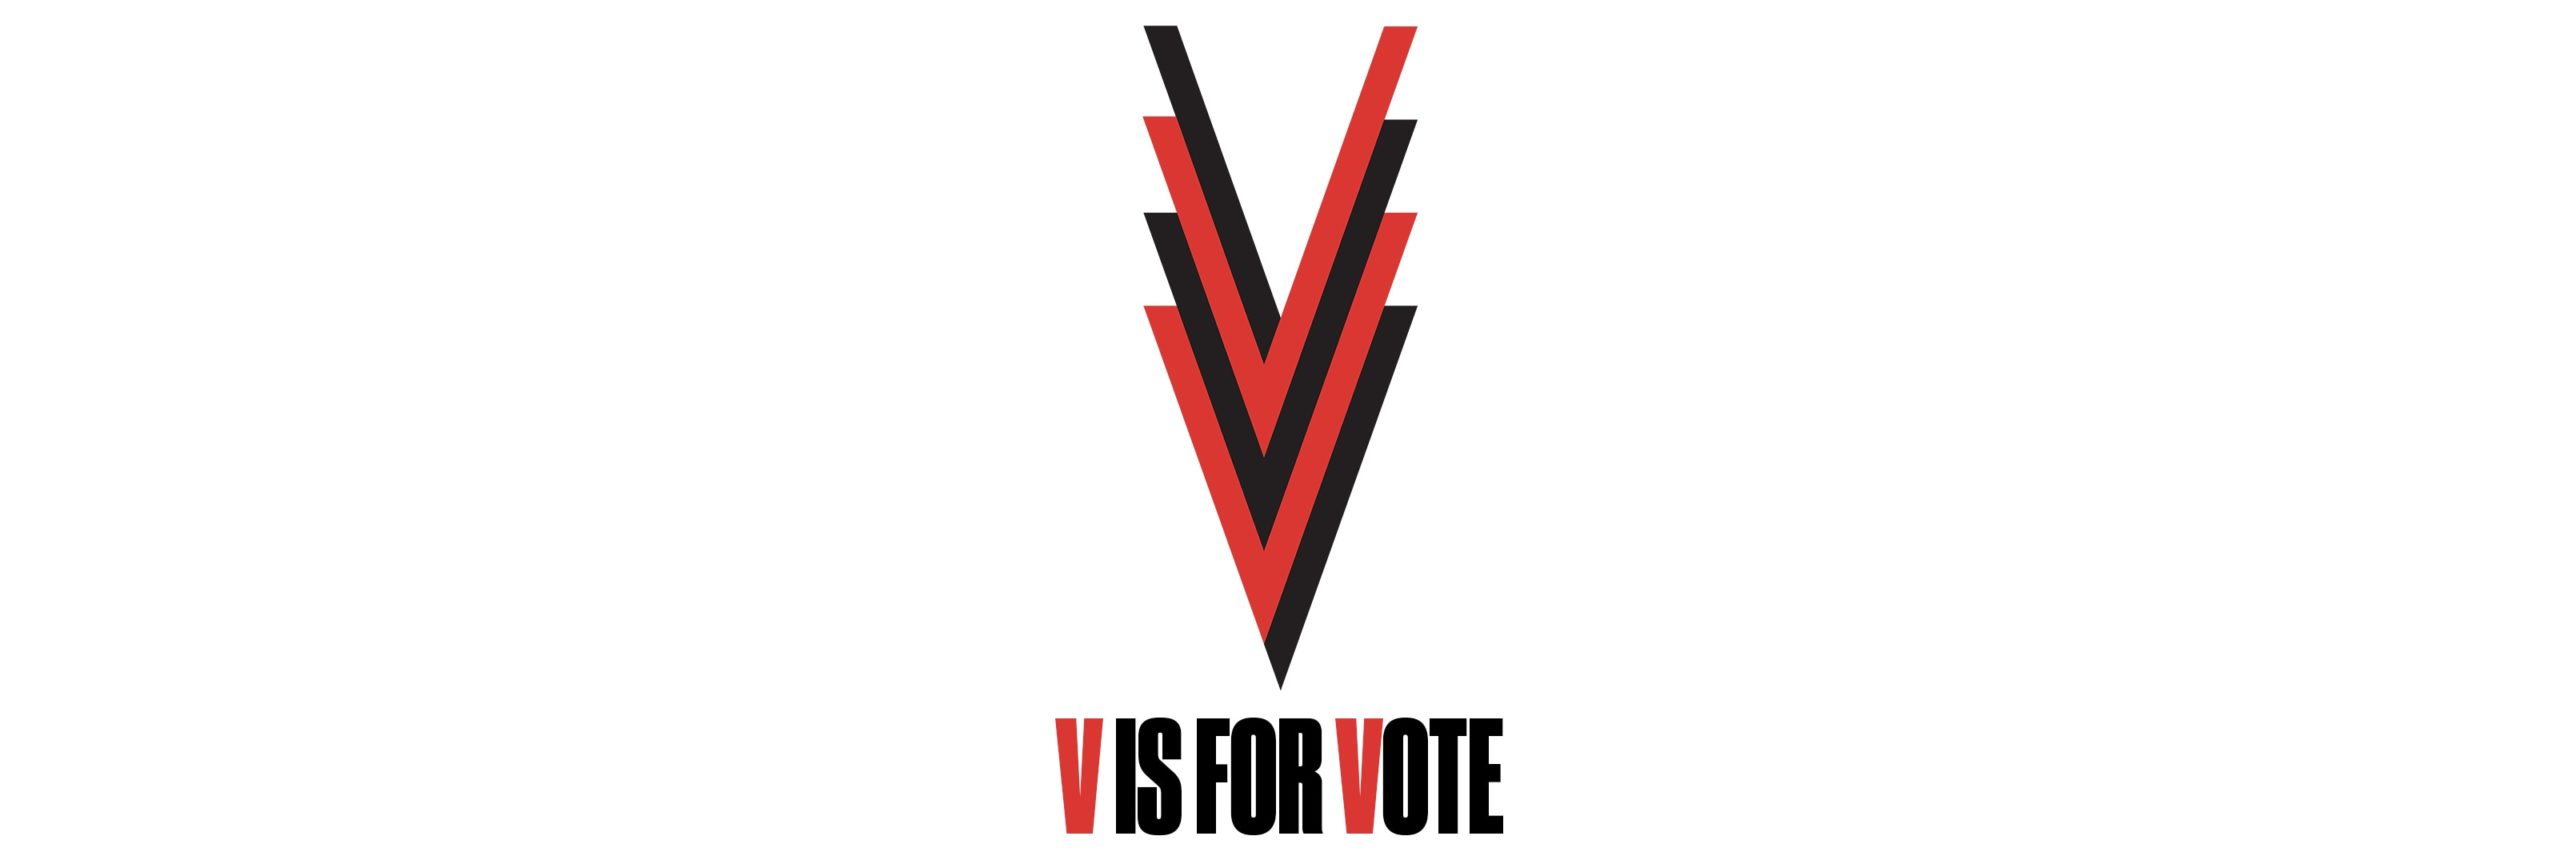 V is for Vote header banner